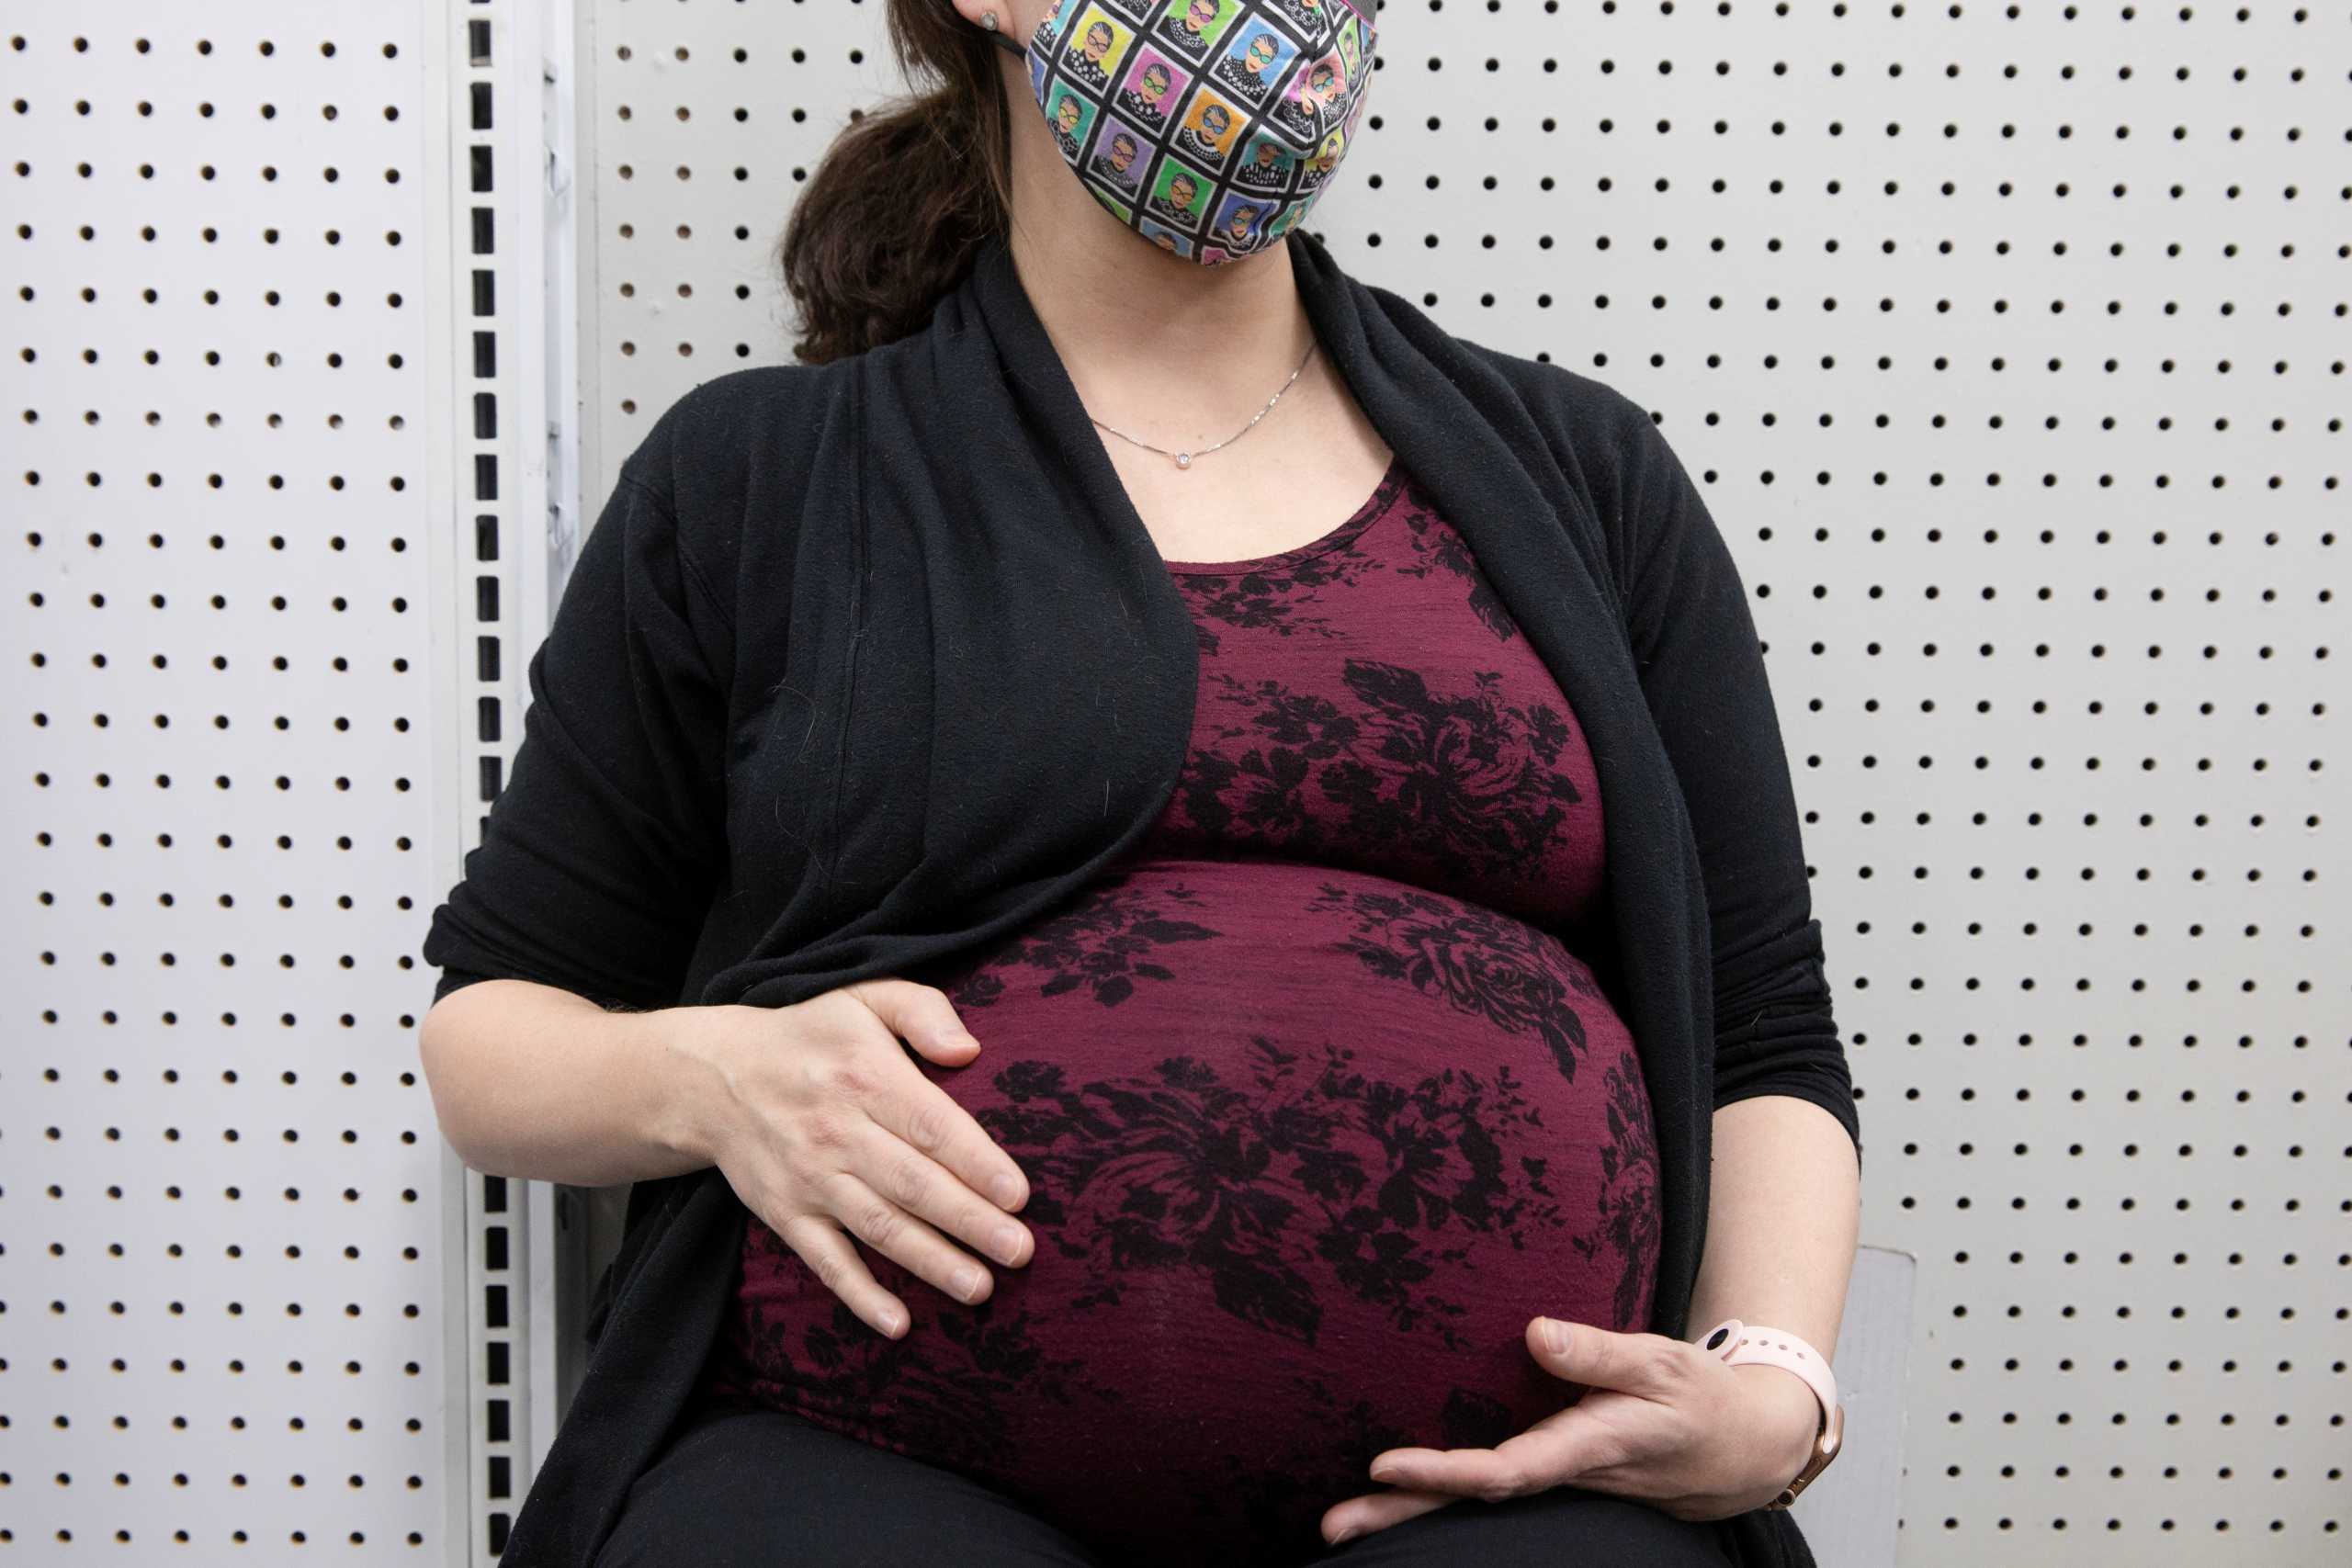 ΗΠΑ: Απαγορεύεται δια νόμου η άμβλωση στην Οκλαχόμα μετά την 6η εβδομάδα κύησης